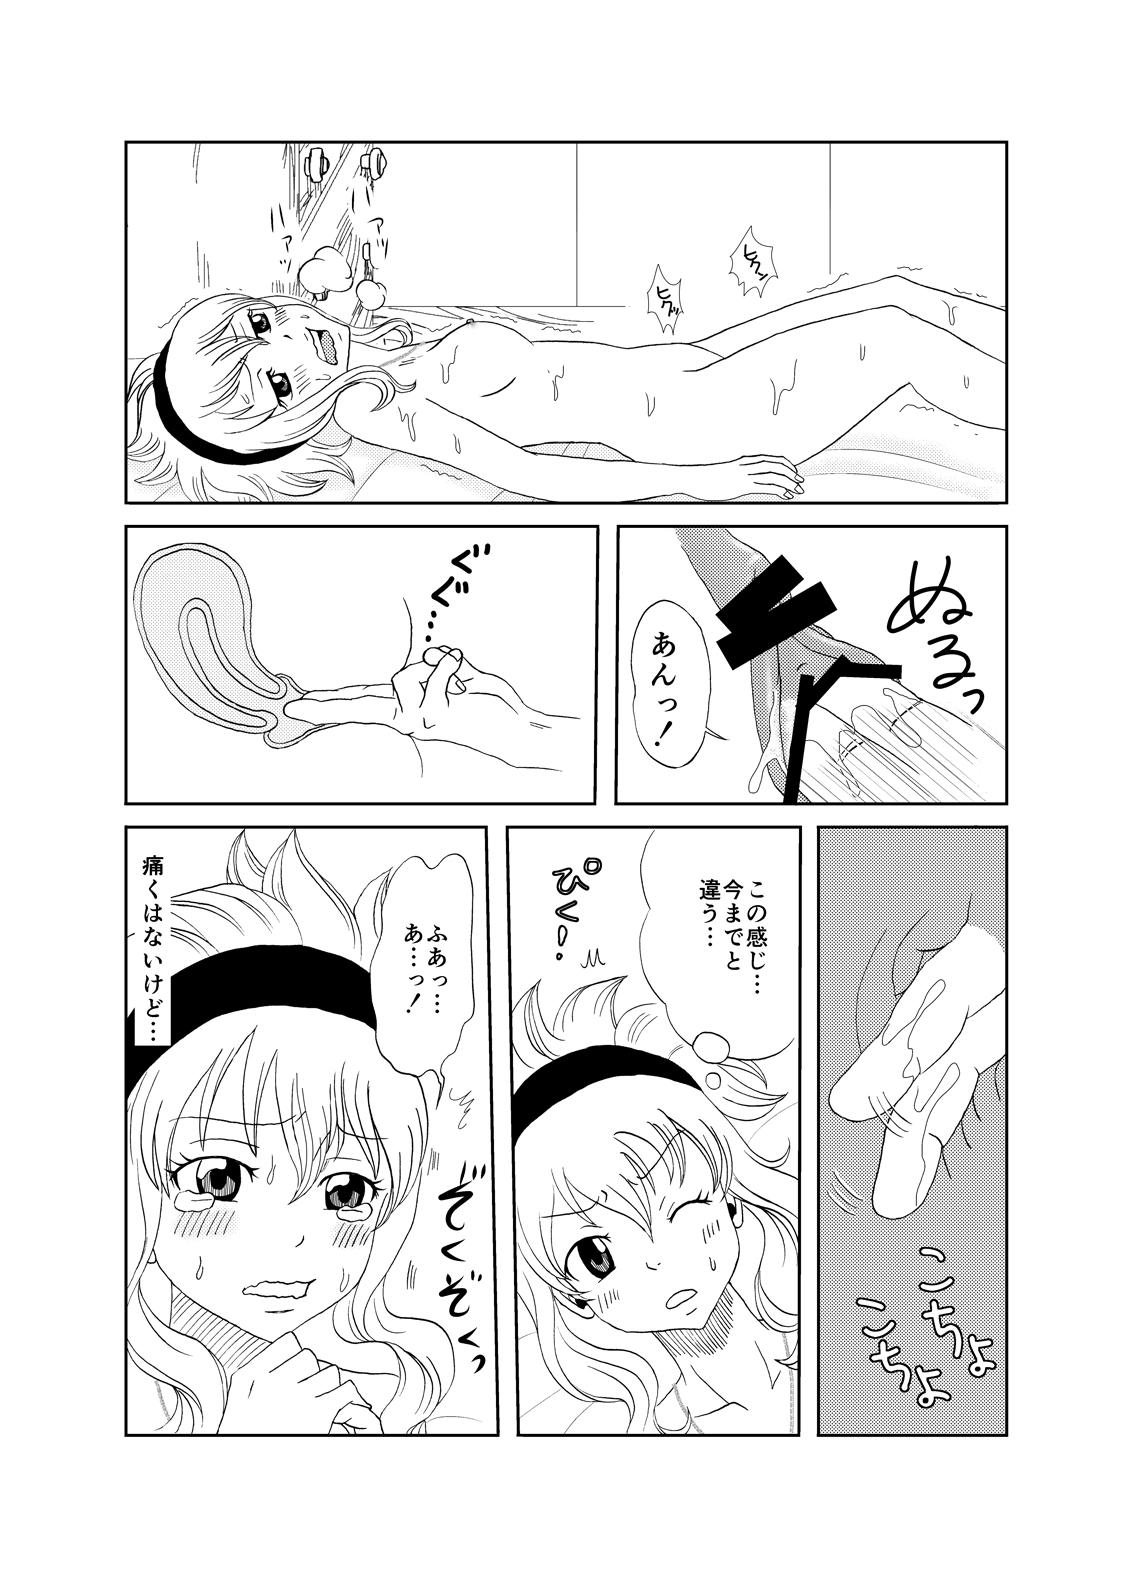 Nut GajeeLevy Christmas Manga - Fairy tail Flaca - Page 8